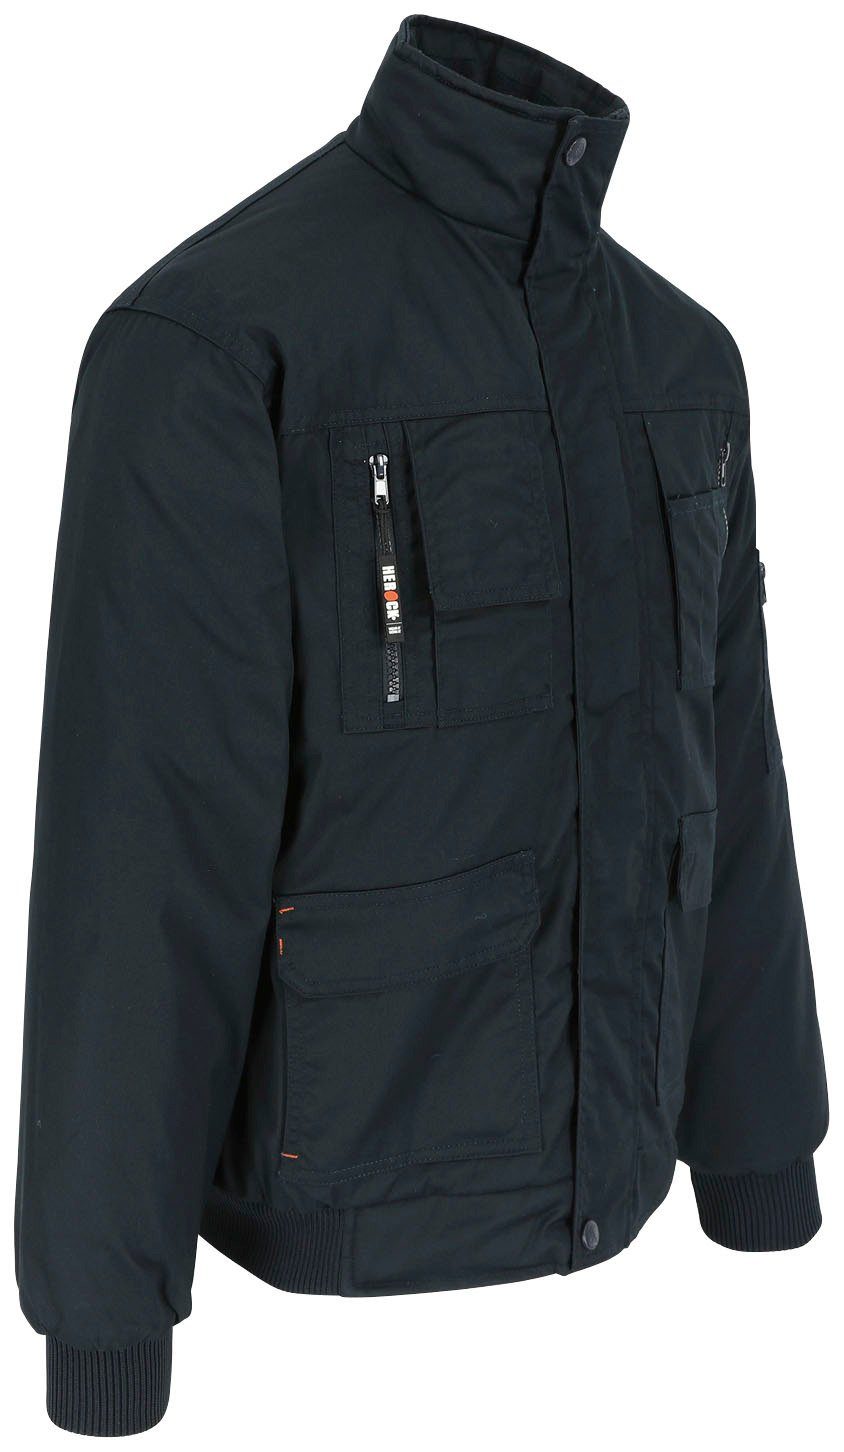 Herock Arbeitsjacke Typhon Jacke Wasserabweisend mit viele viele robust, marine Farben Taschen, Fleece-Kragen